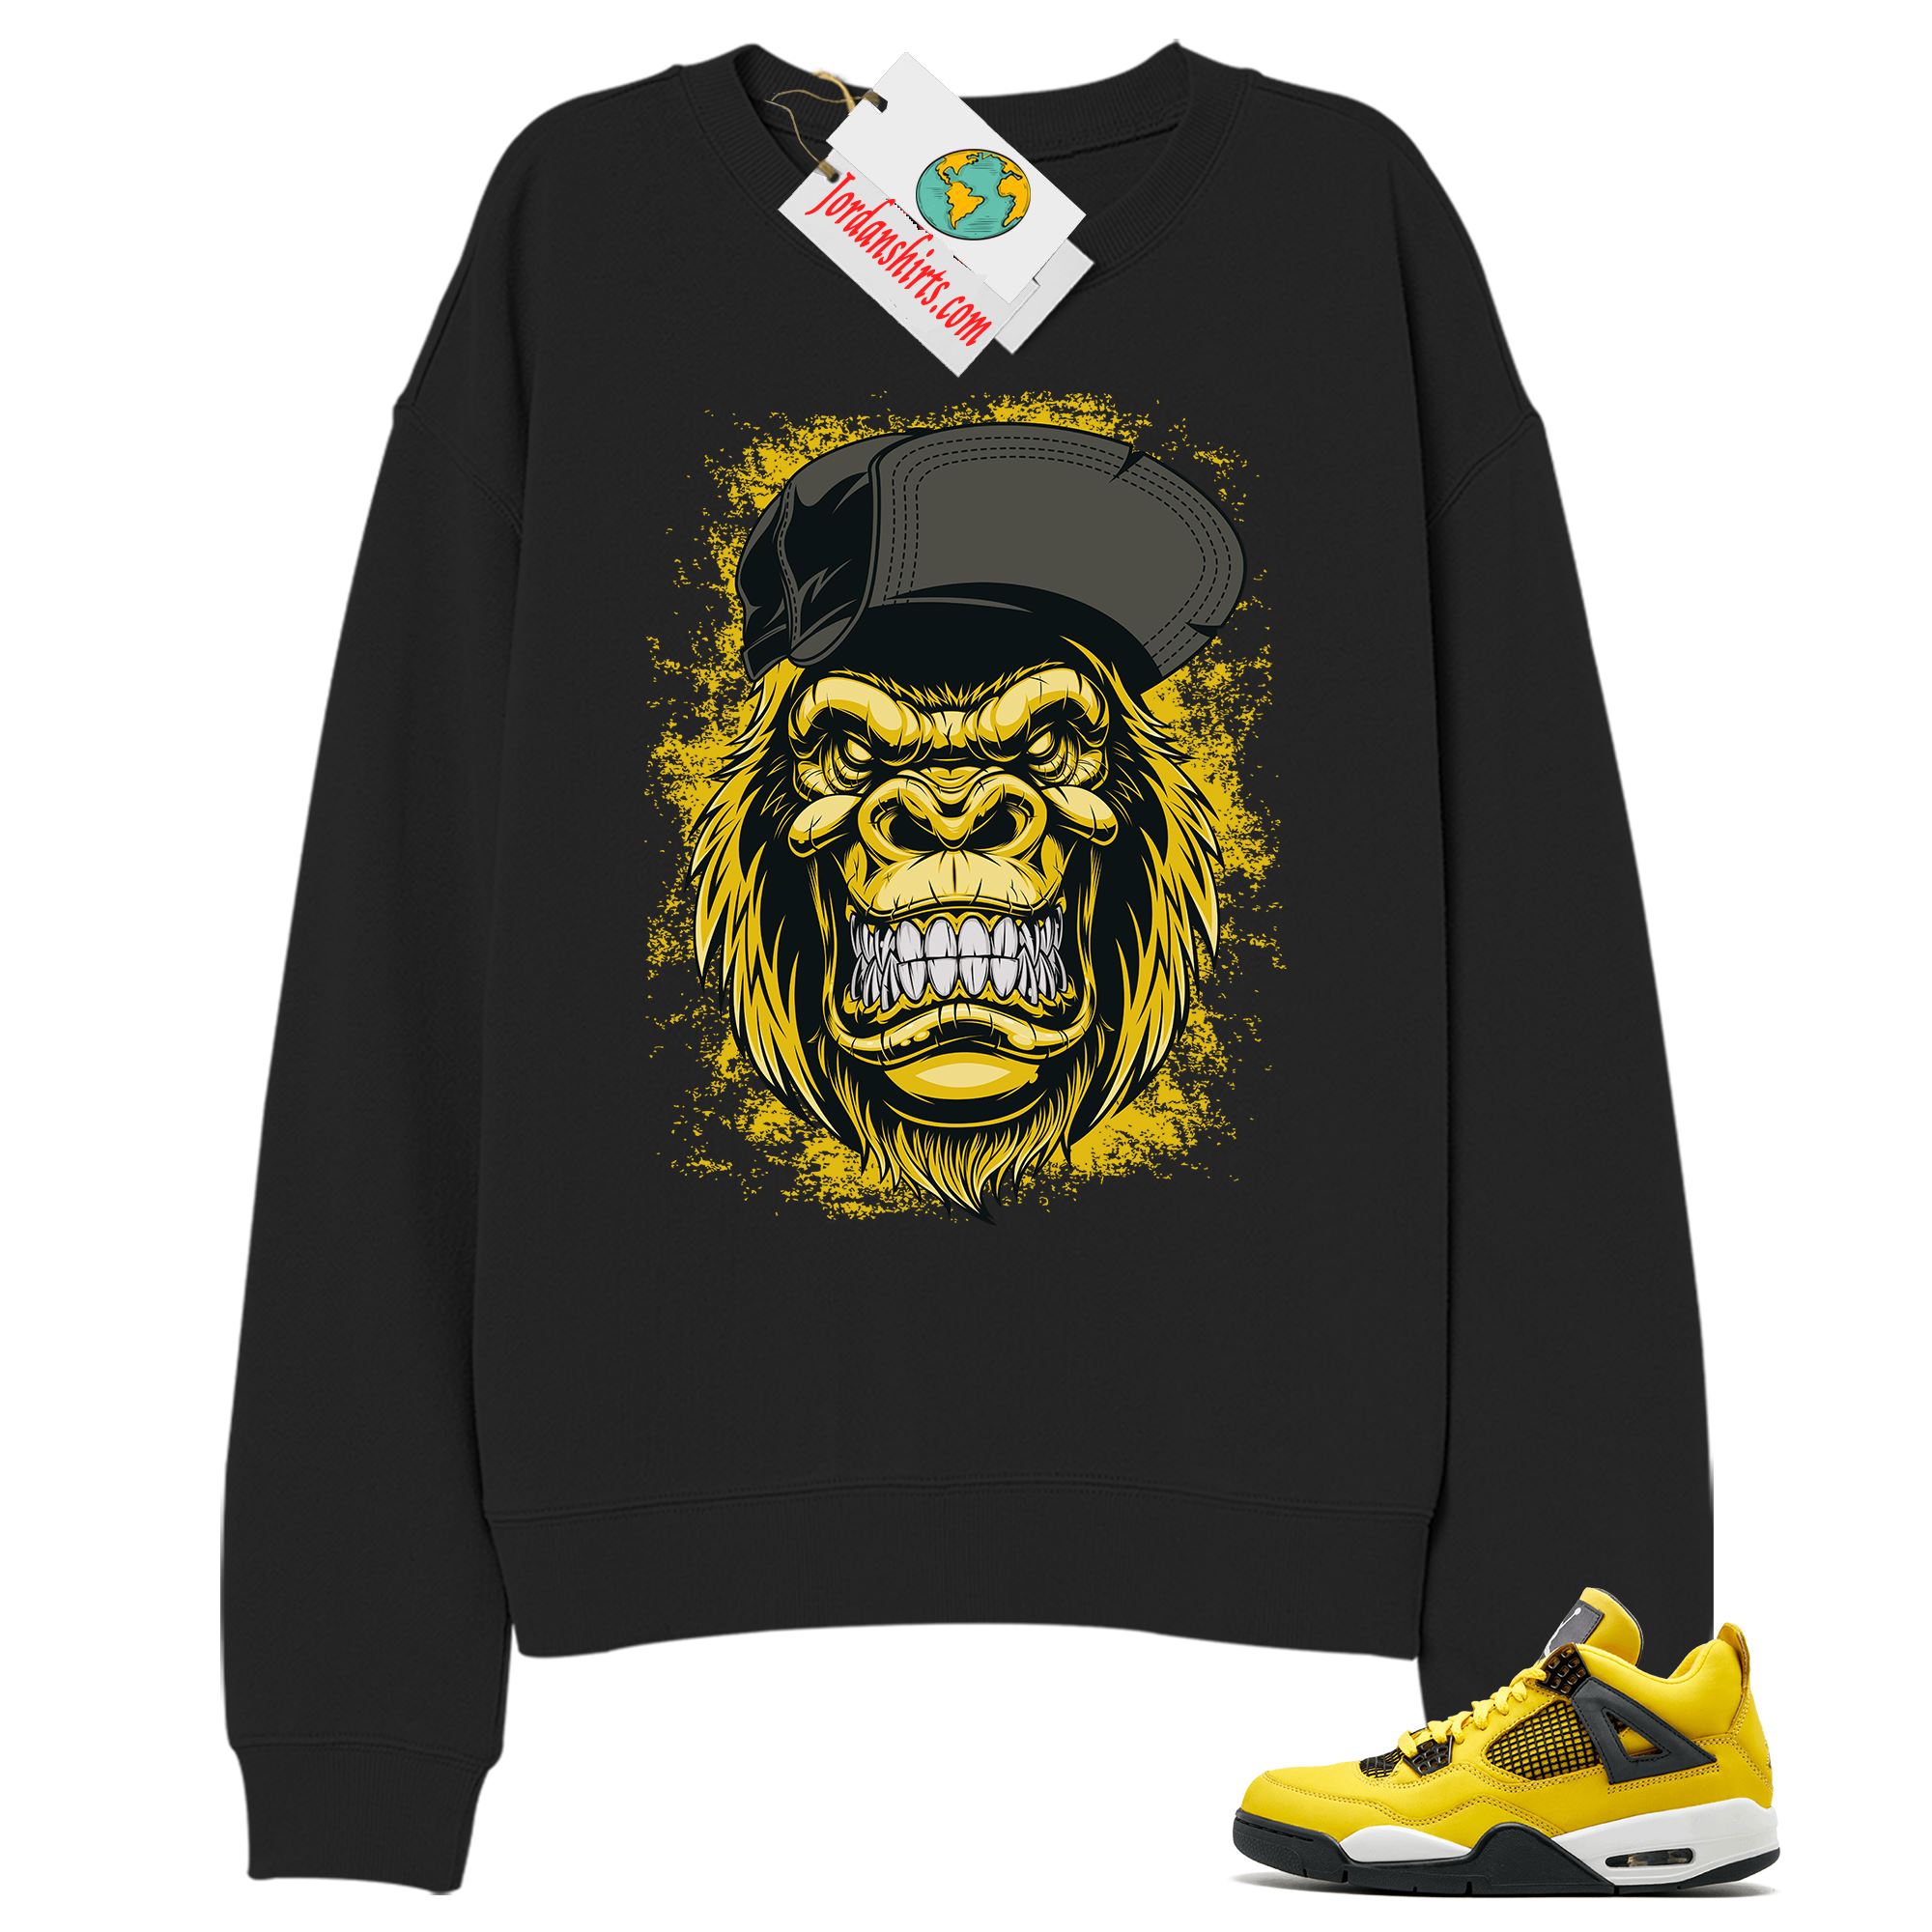 Jordan 4 Sweatshirt, Ferocious Gorilla Black Sweatshirt Air Jordan 4 Tour Yellow Lightning 4s Plus Size Up To 5xl